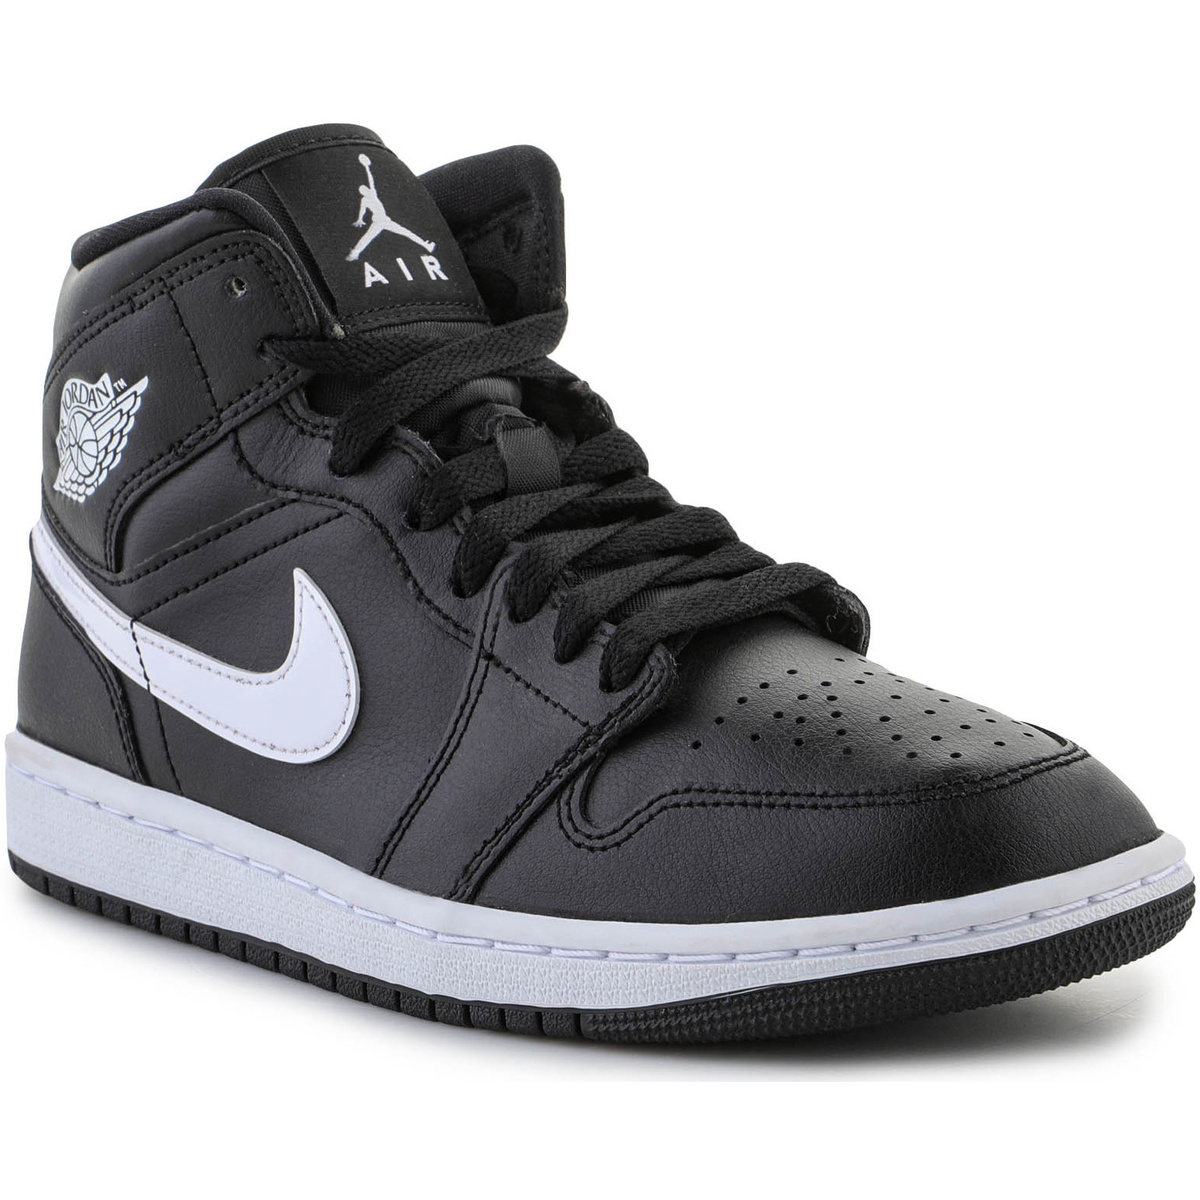 Παπούτσια του Μπάσκετ Nike Air Jordan 1 Mid Wmns Black White DV0991001